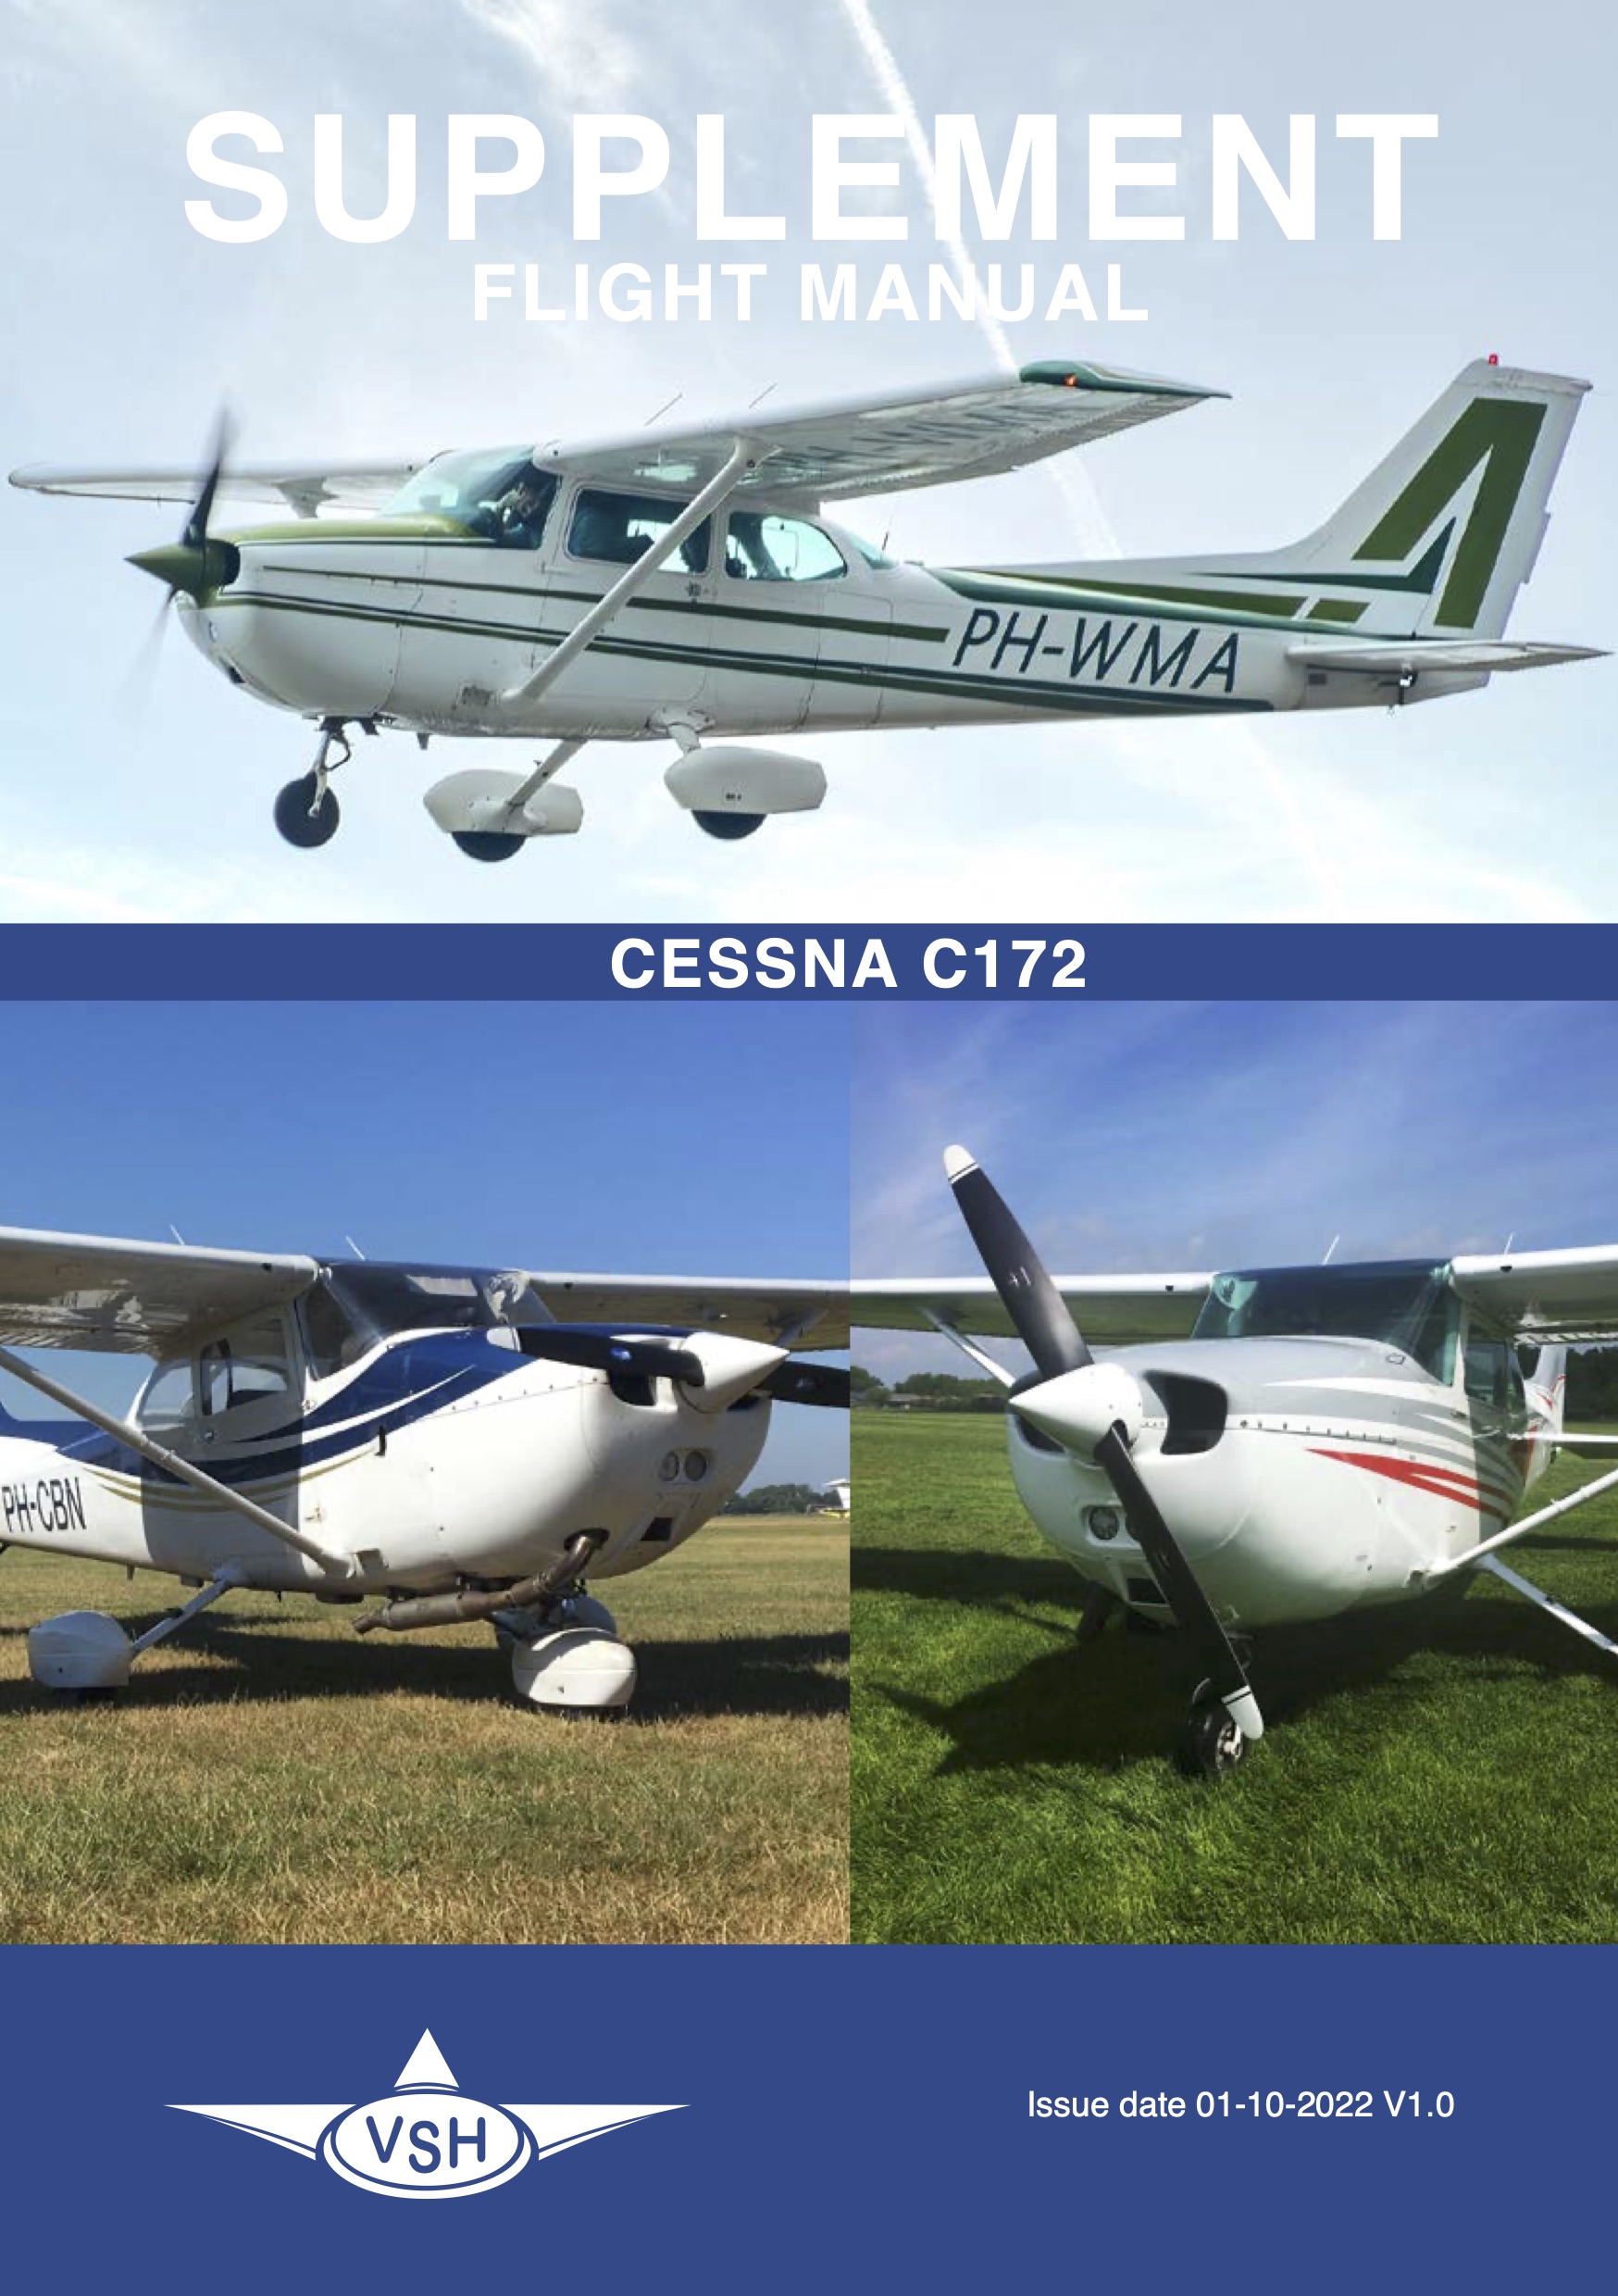 Supplement Cessna